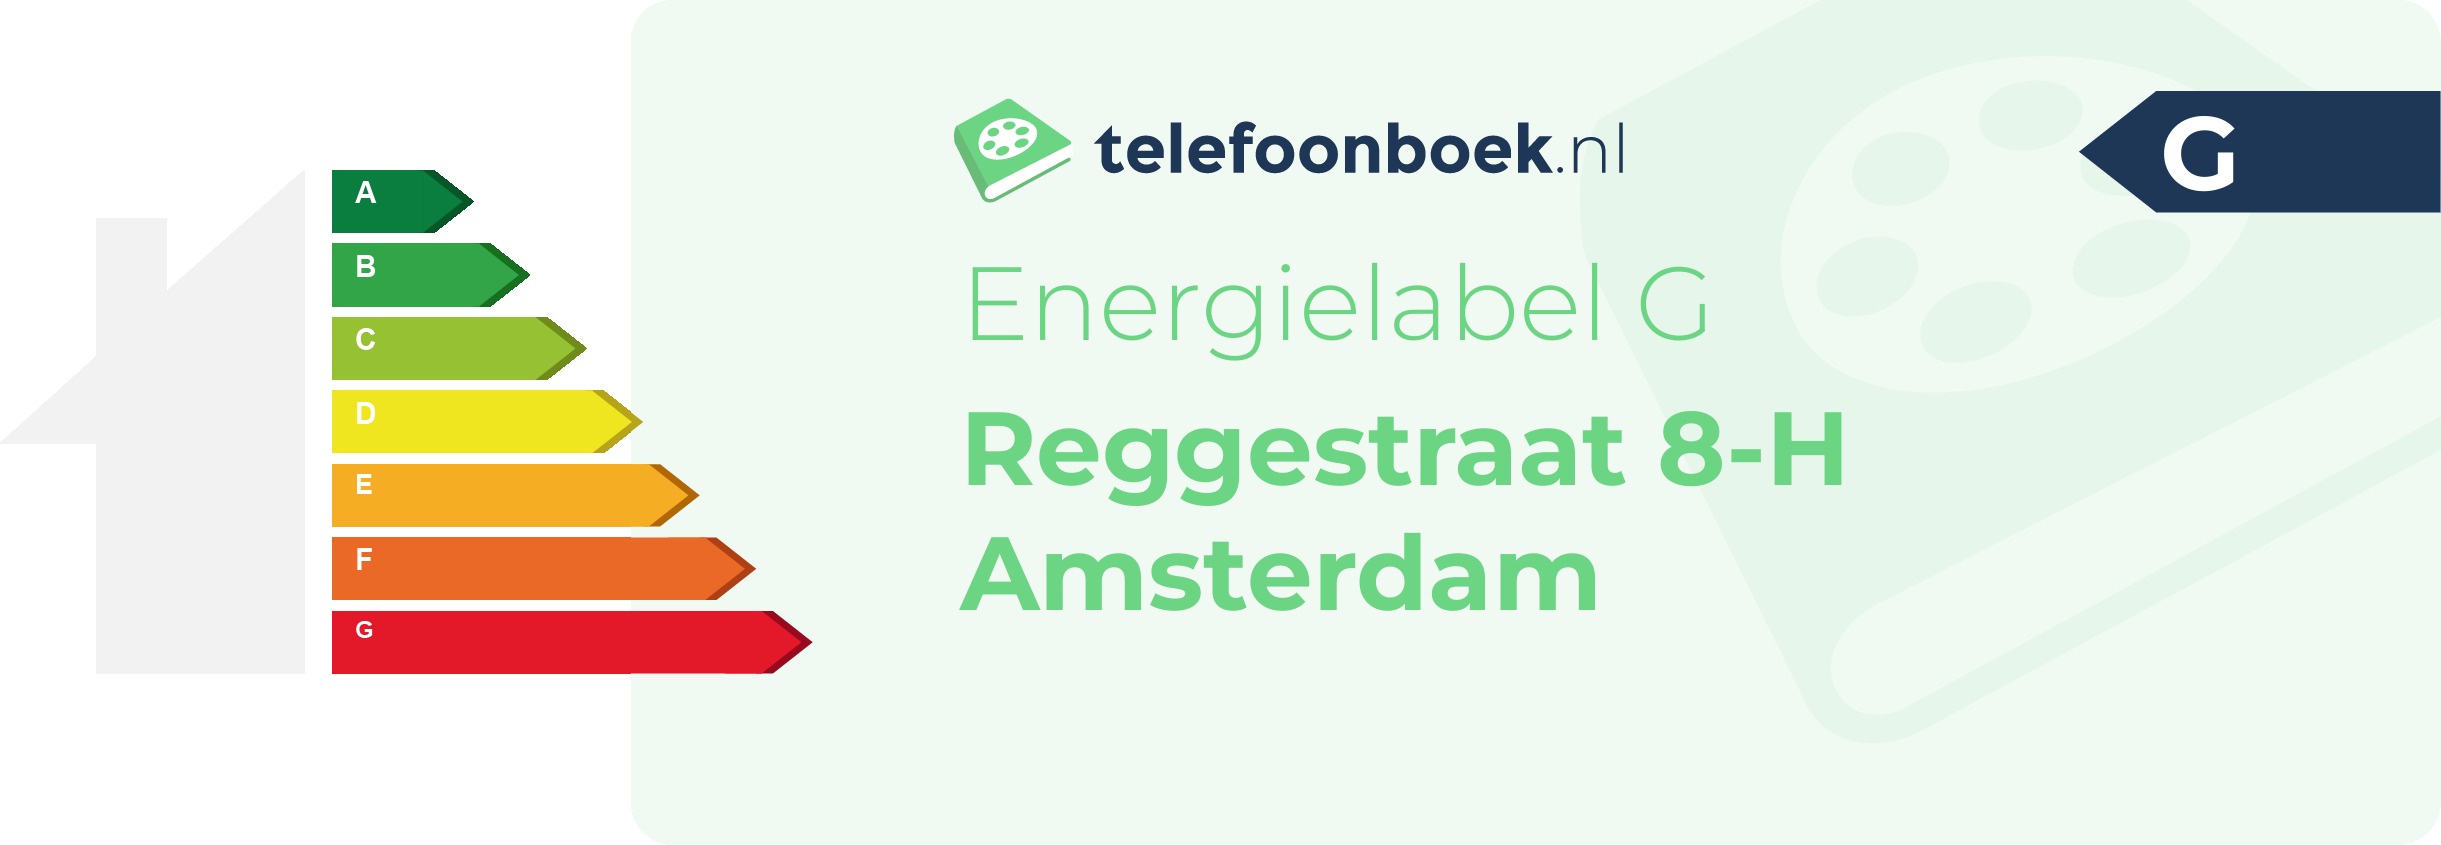 Energielabel Reggestraat 8-H Amsterdam